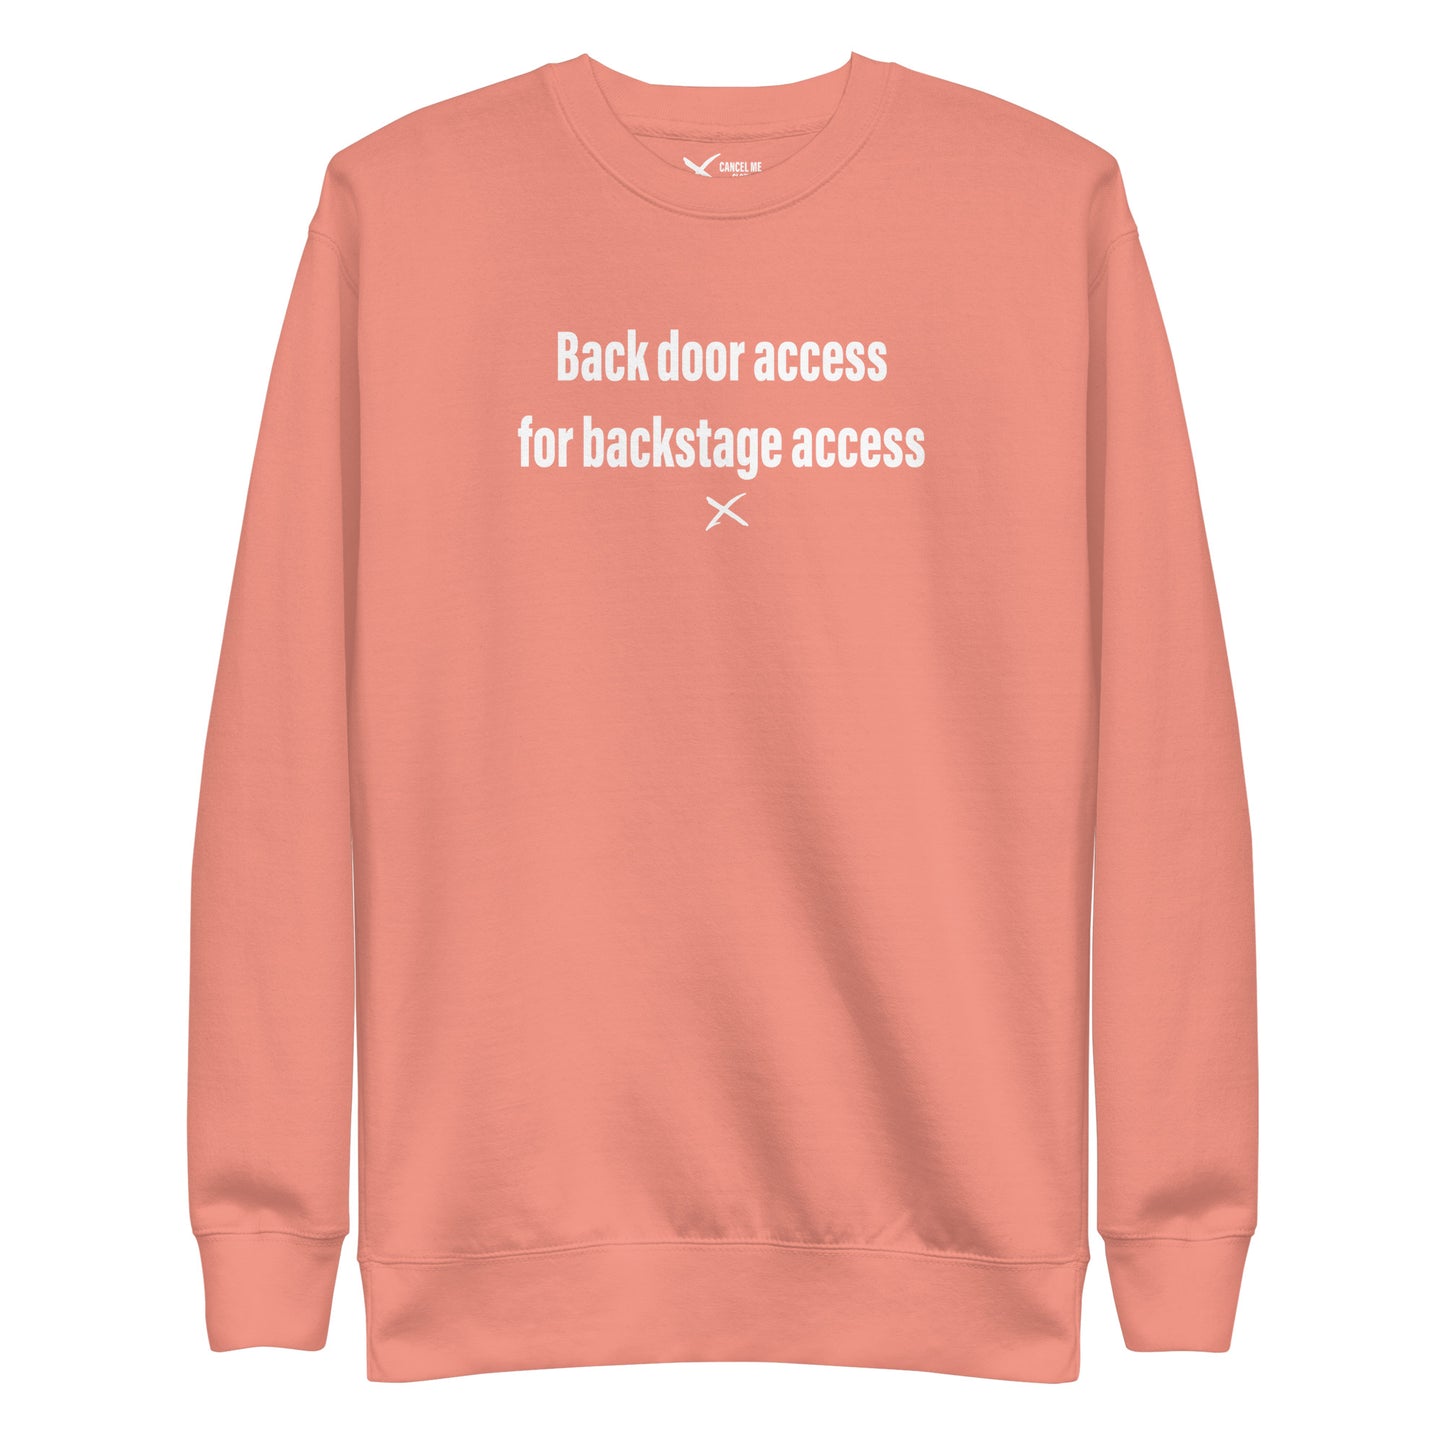 Back door access for backstage access - Sweatshirt